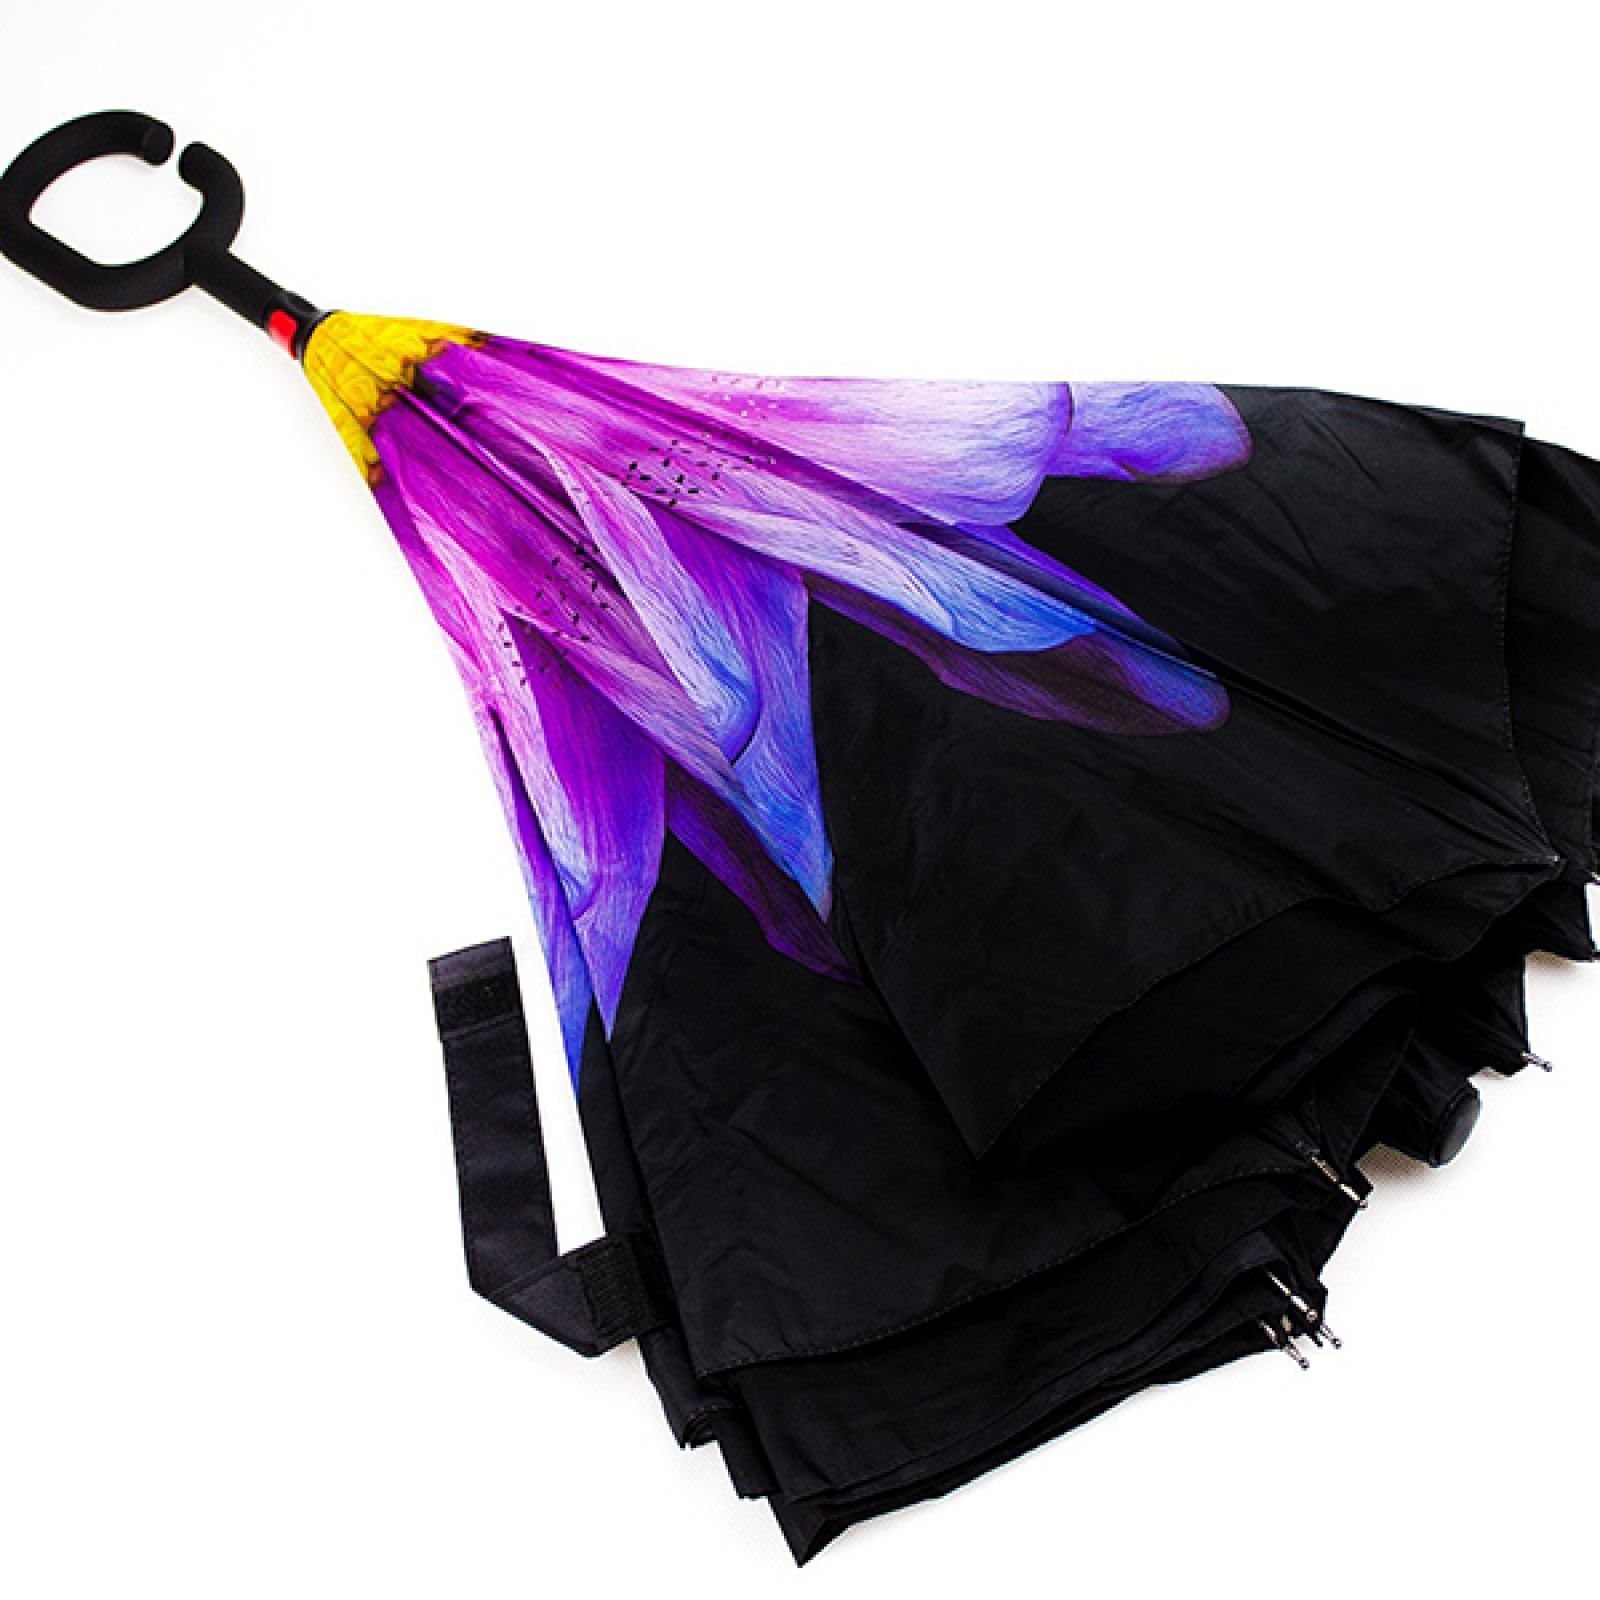 Зонт обратного сложения, антизонт, умный зонт, зонт наоборот Up Brella Гербера-Фиолетовый 151035